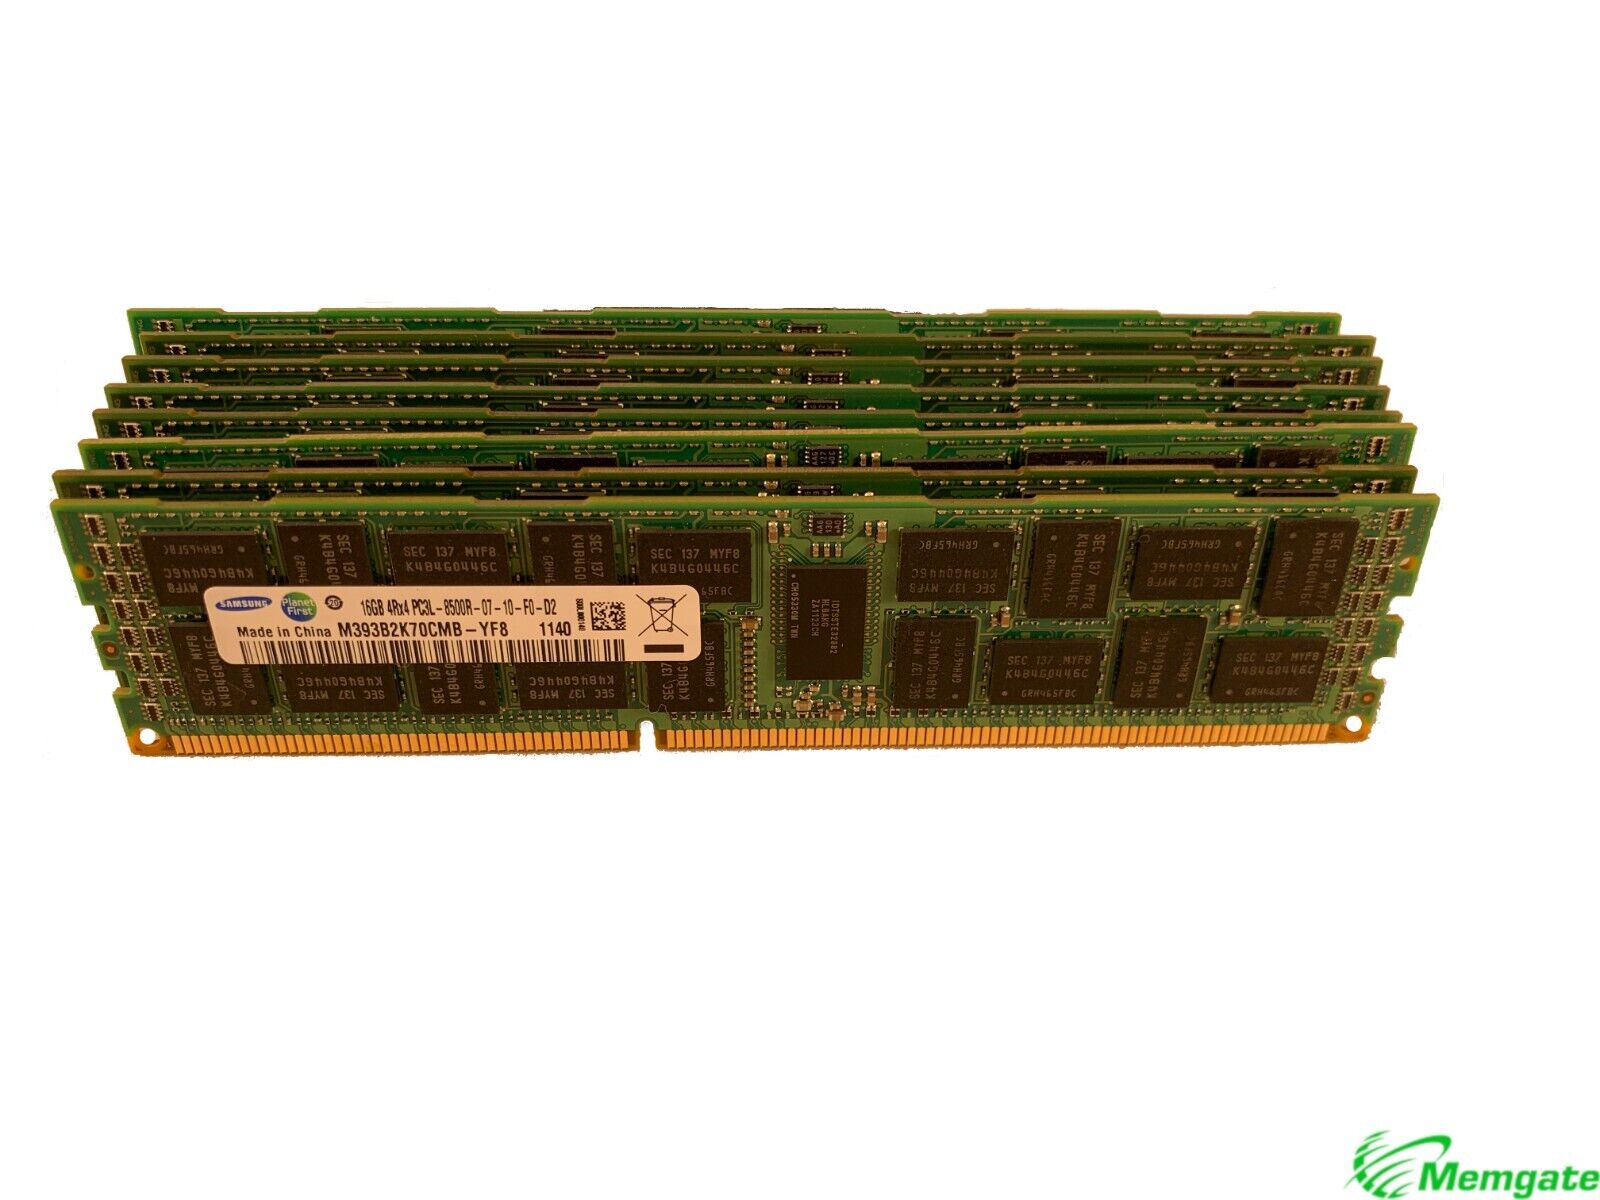 64GB (4x16GB) DDR3 PC3-8500R 4Rx4 Server Memory RAM for IBM X3650 M4 Type 7915